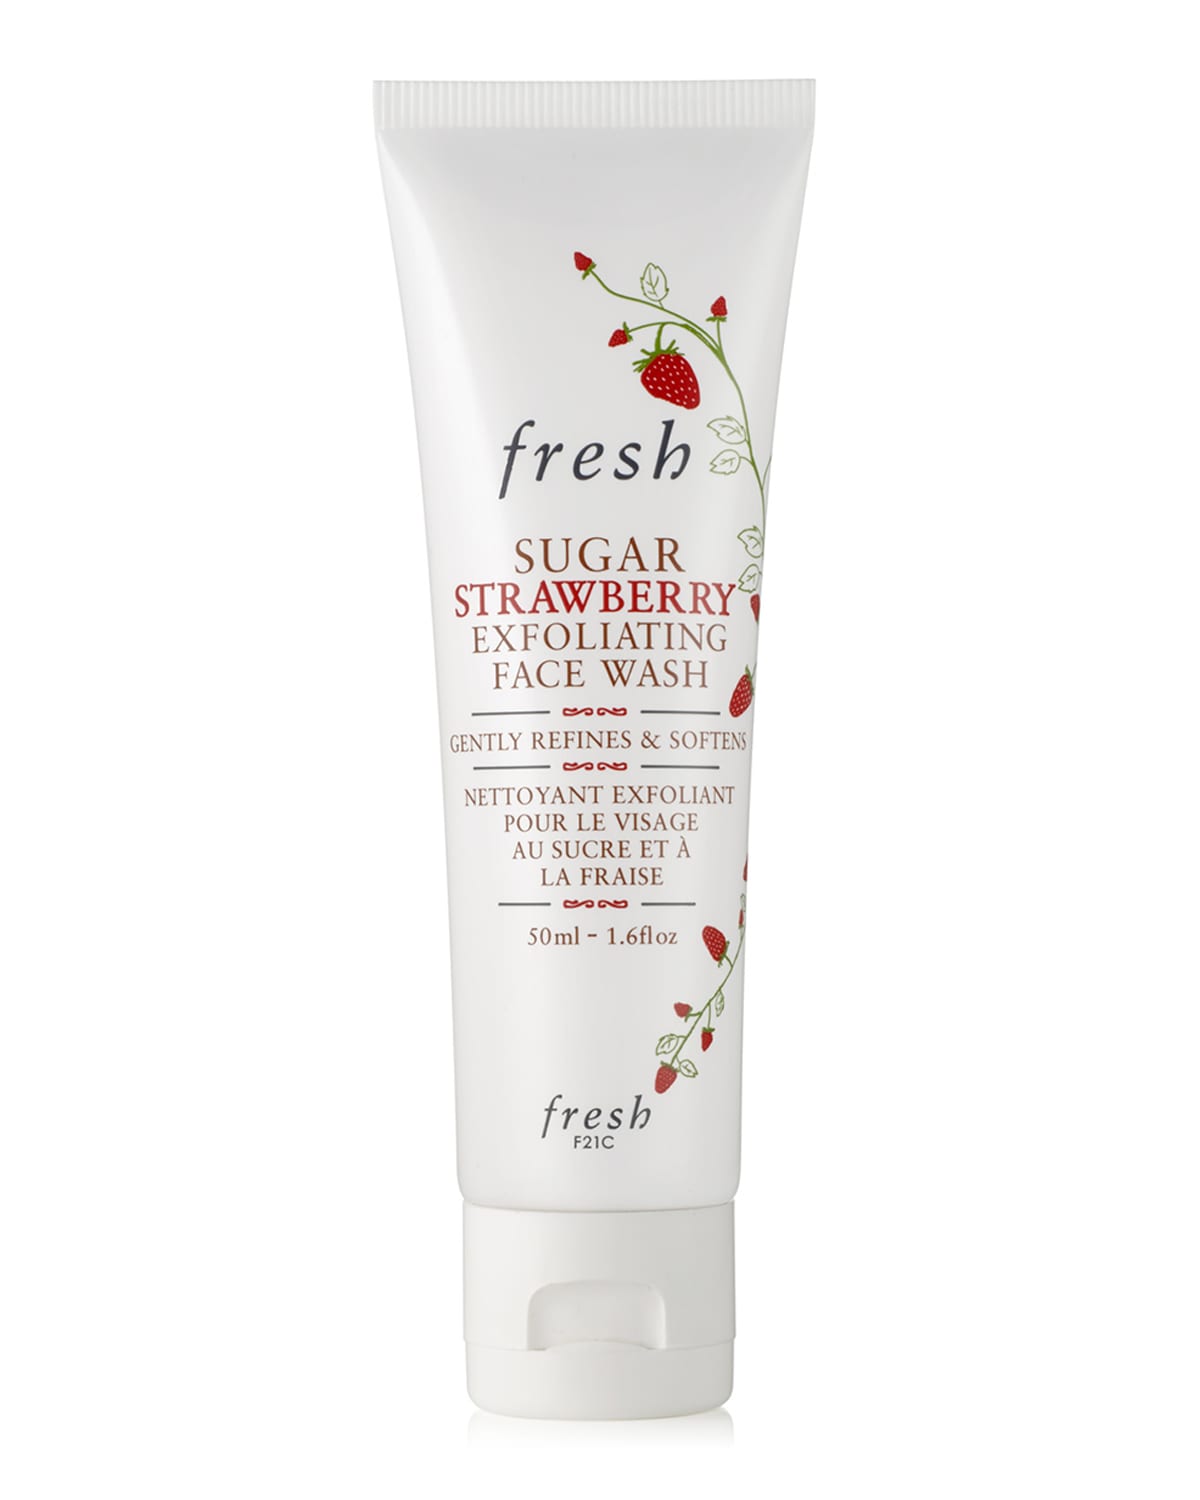 Sugar Strawberry Exfoliating Face Wash, 1.6 oz.